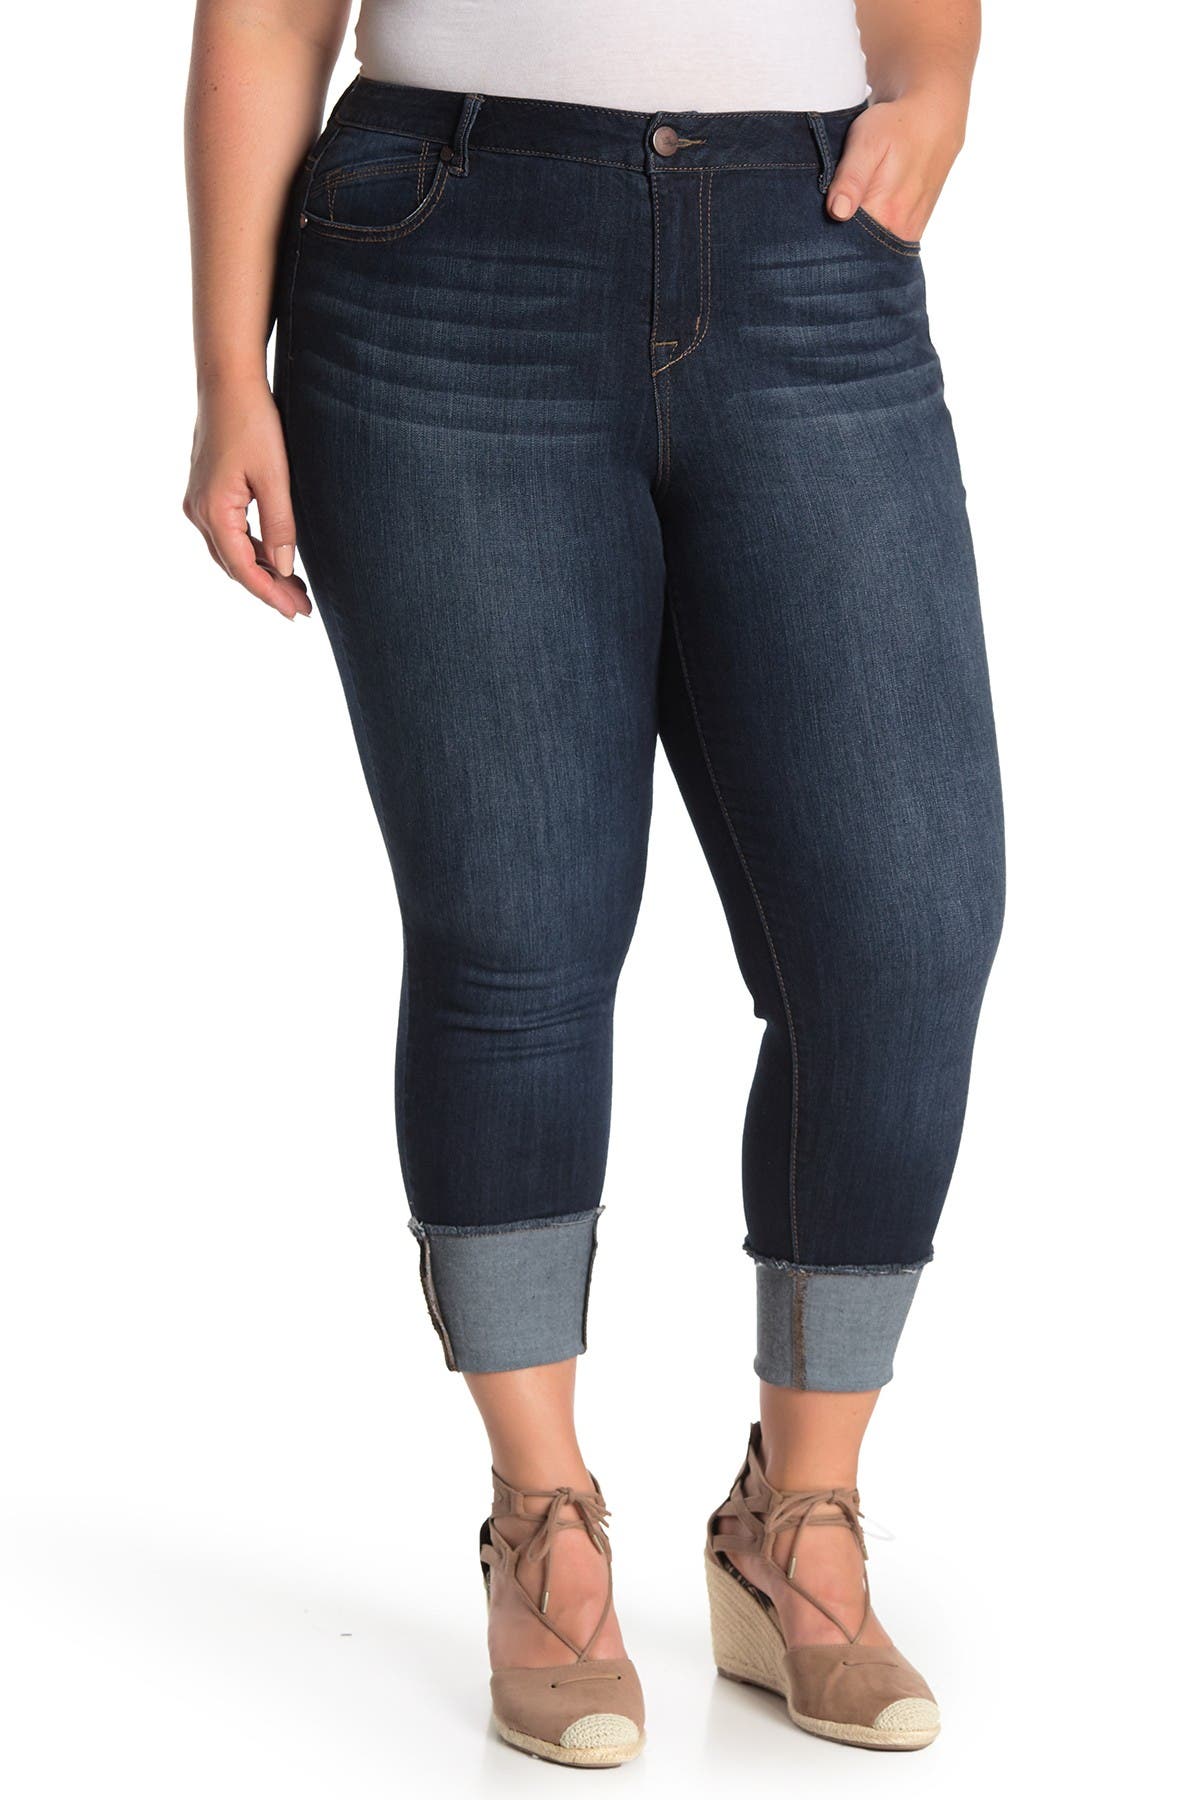 1822 denim jeans plus size